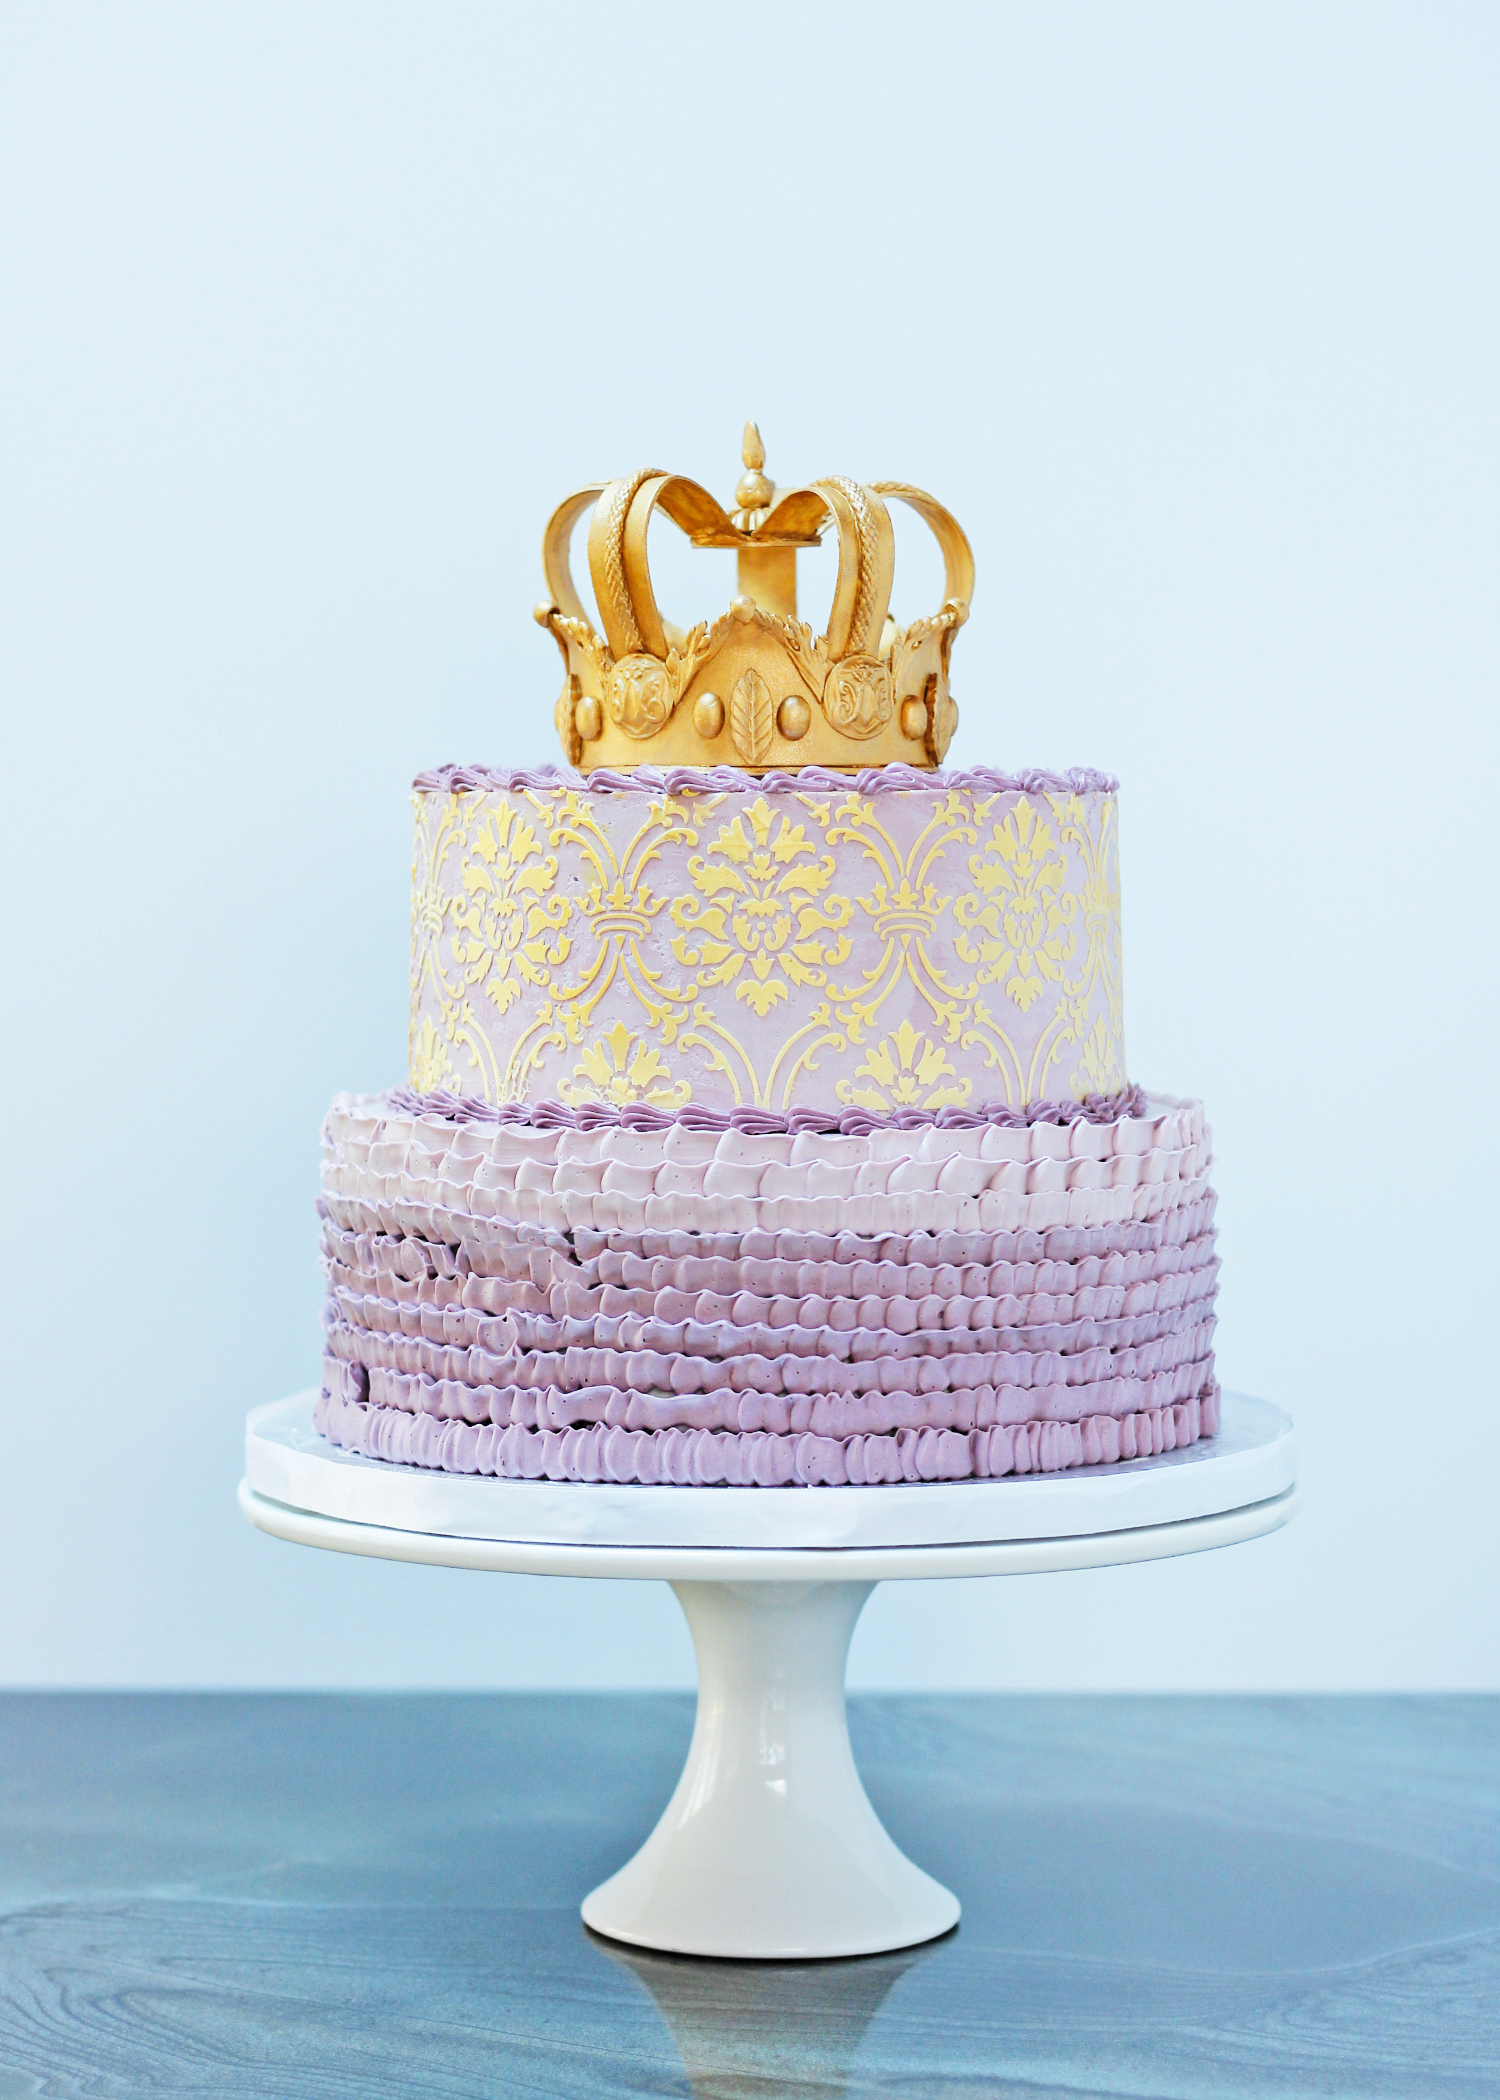 Crown cake 2